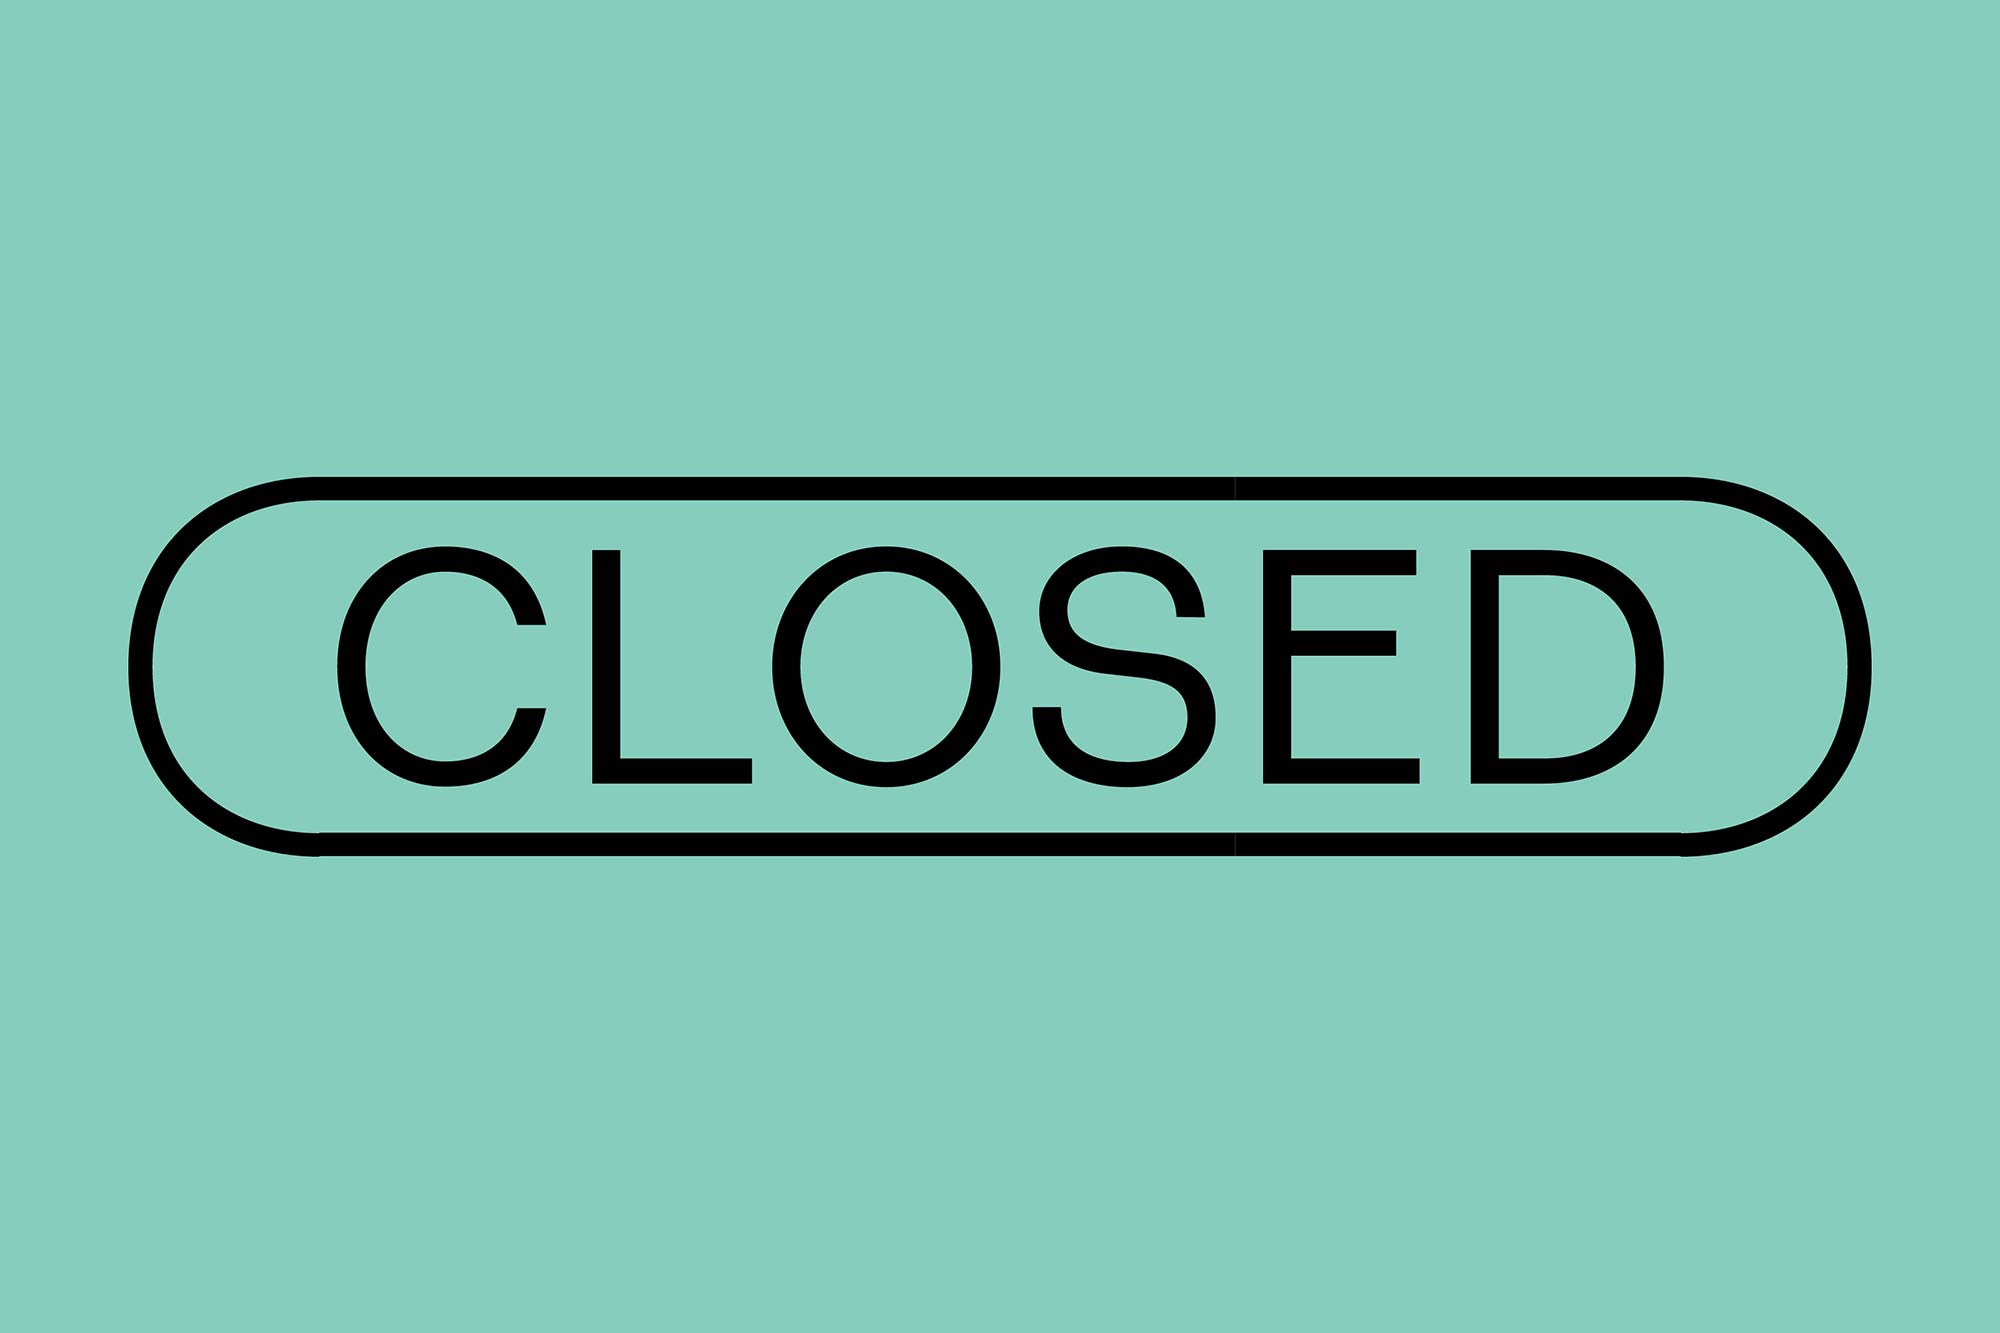 closed 2